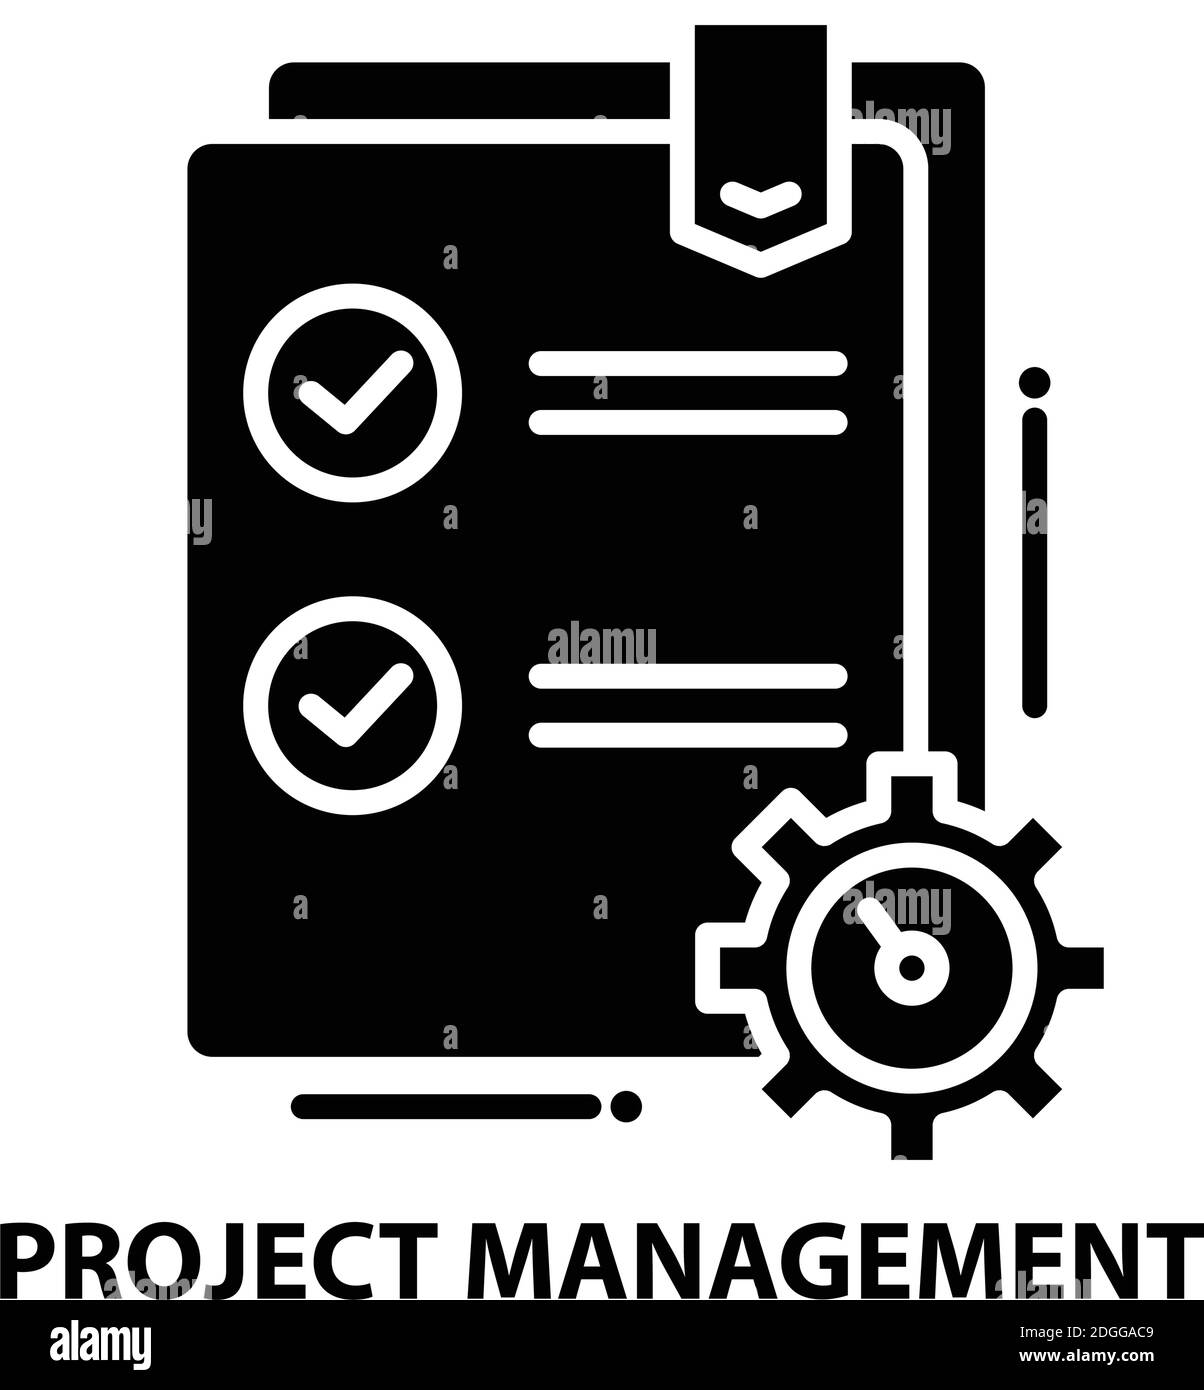 Projektmanagement-Symbol, schwarzes Vektorzeichen mit editierbaren Konturen, Konzeptdarstellung Stock Vektor